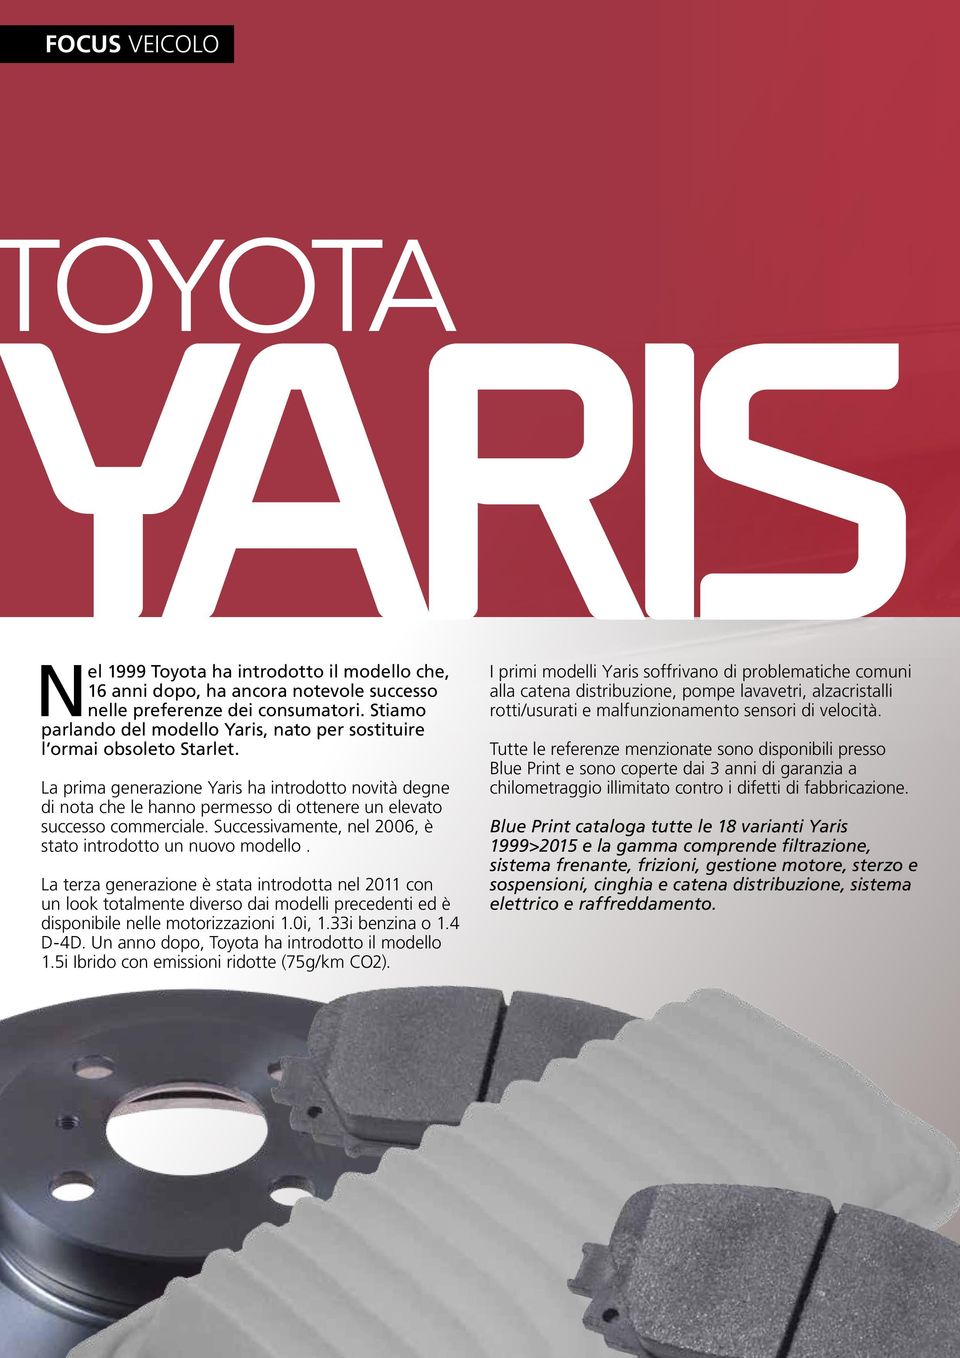 La prima generazione Yaris ha introdotto novità degne di nota che le hanno permesso di ottenere un elevato successo commerciale. Successivamente, nel 2006, è stato introdotto un nuovo modello.